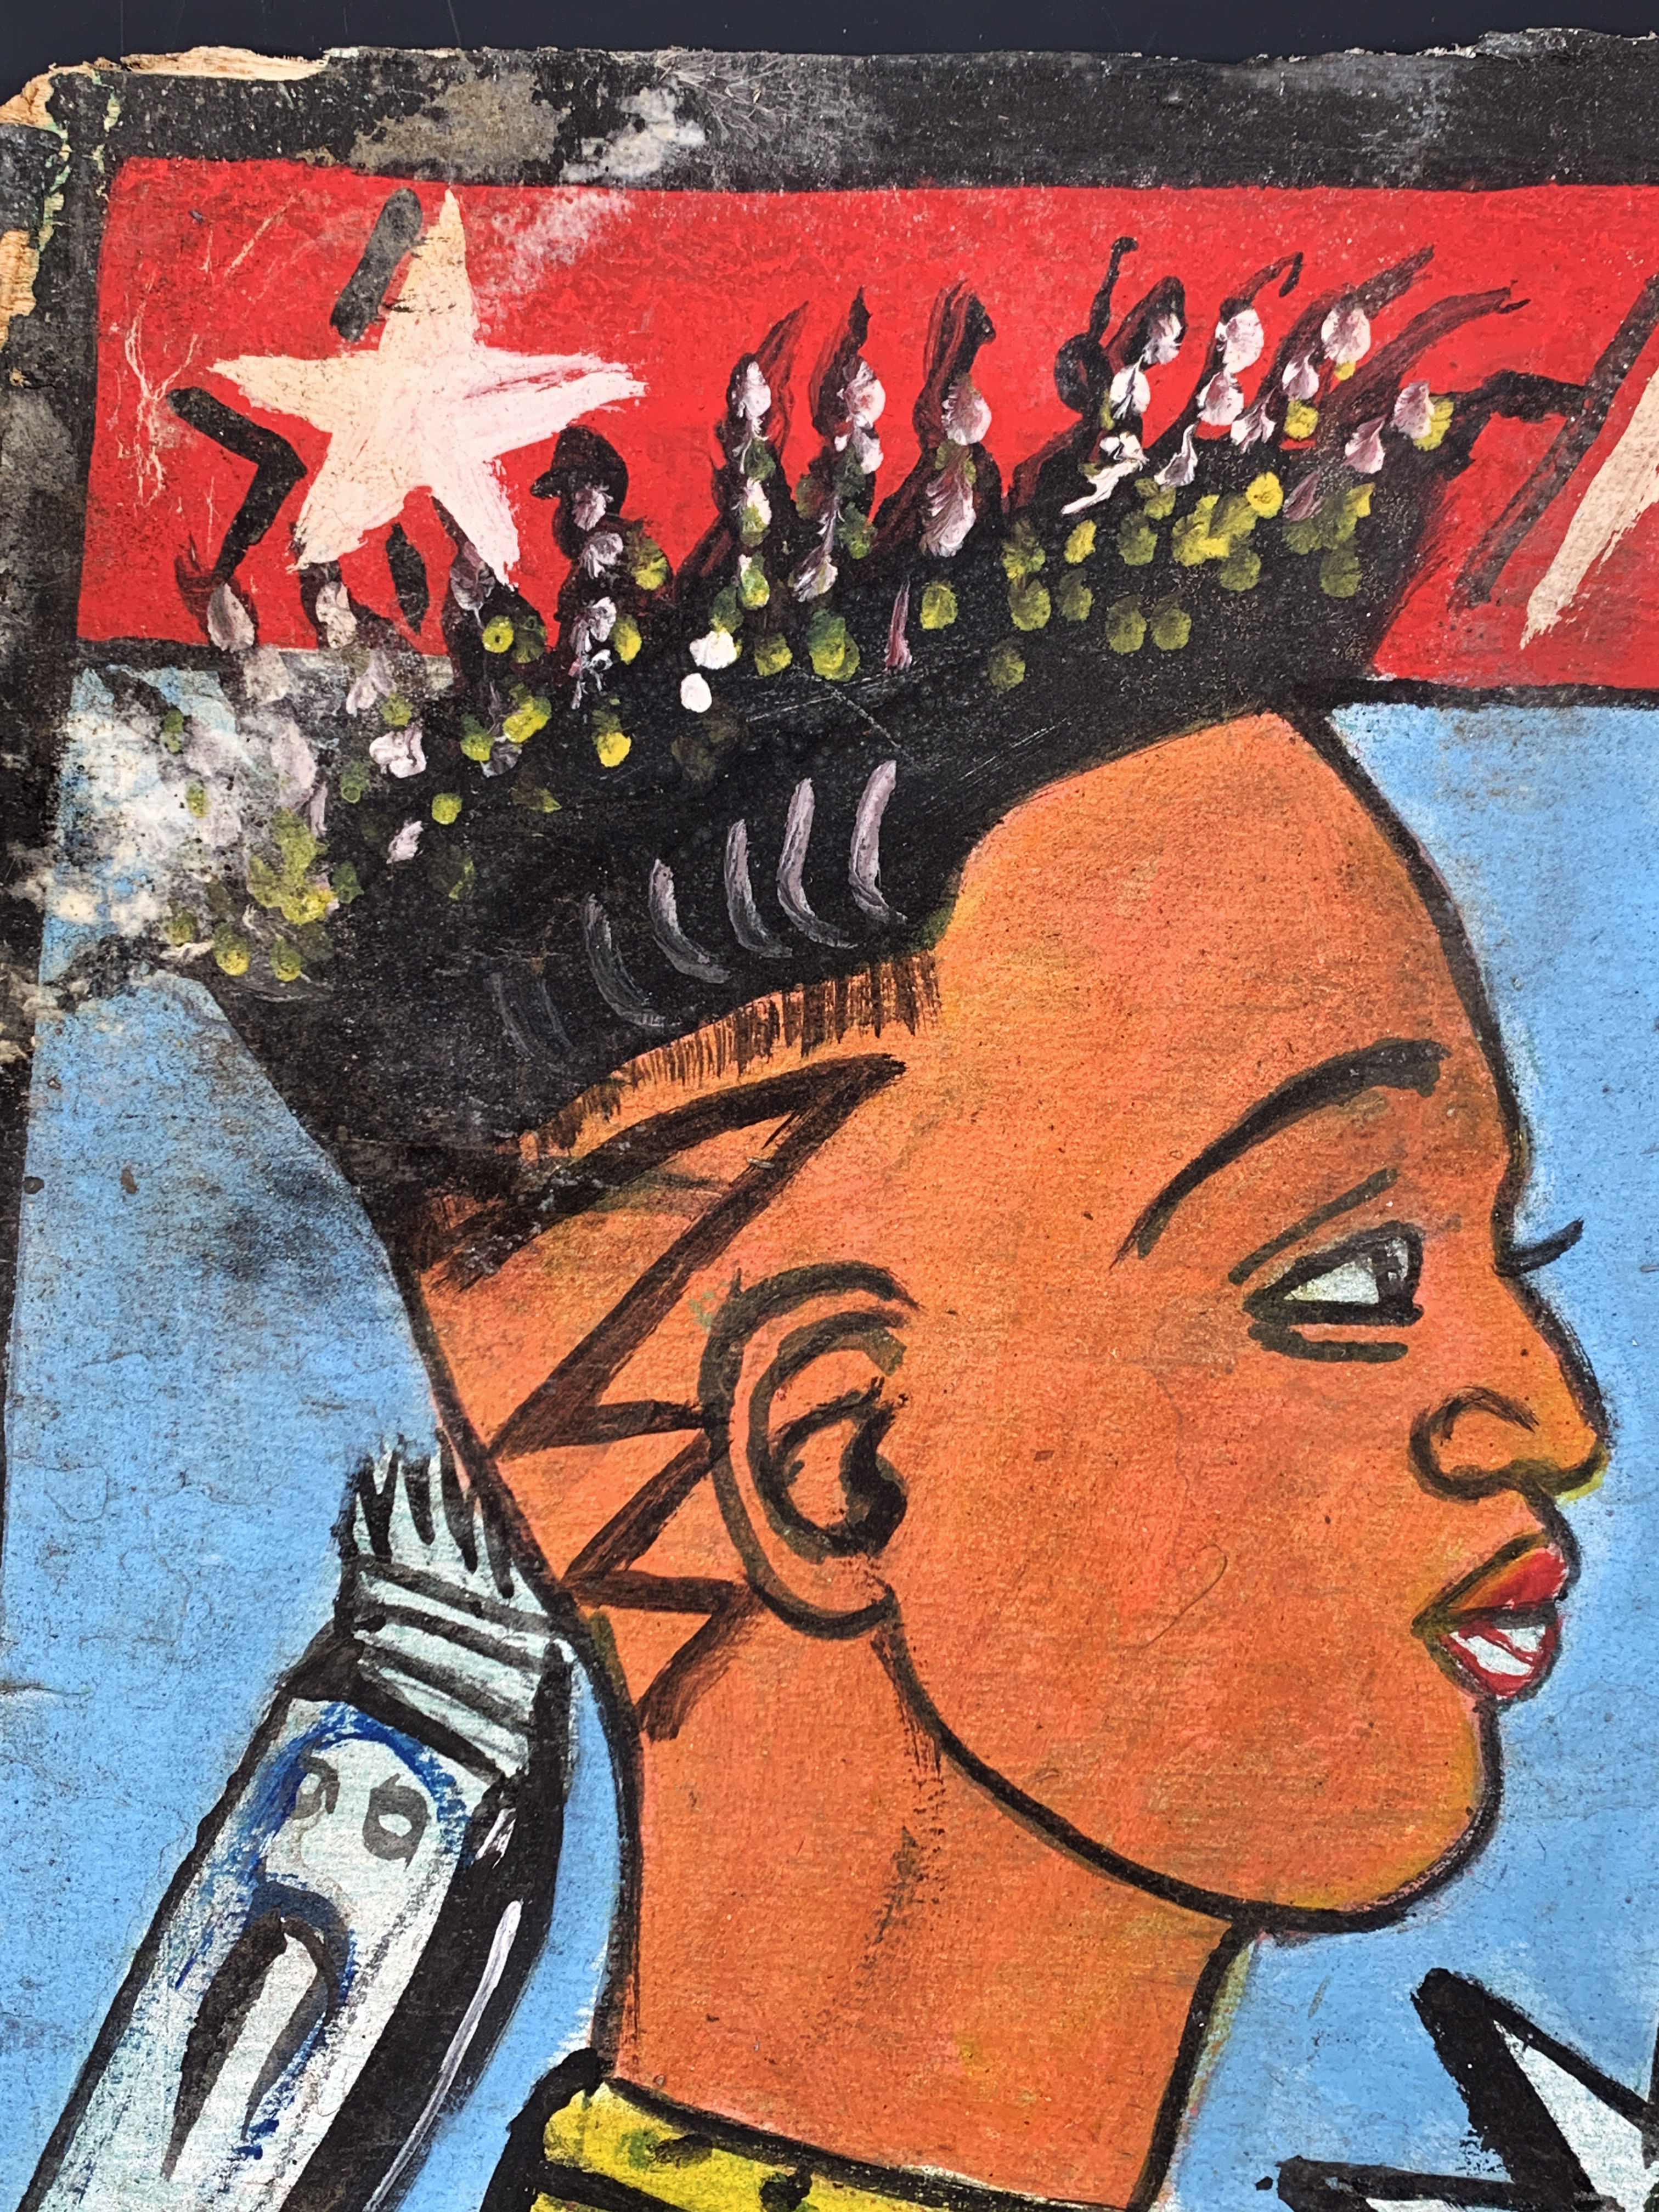 Barber Artwork Sign Ghana West Africa image 2